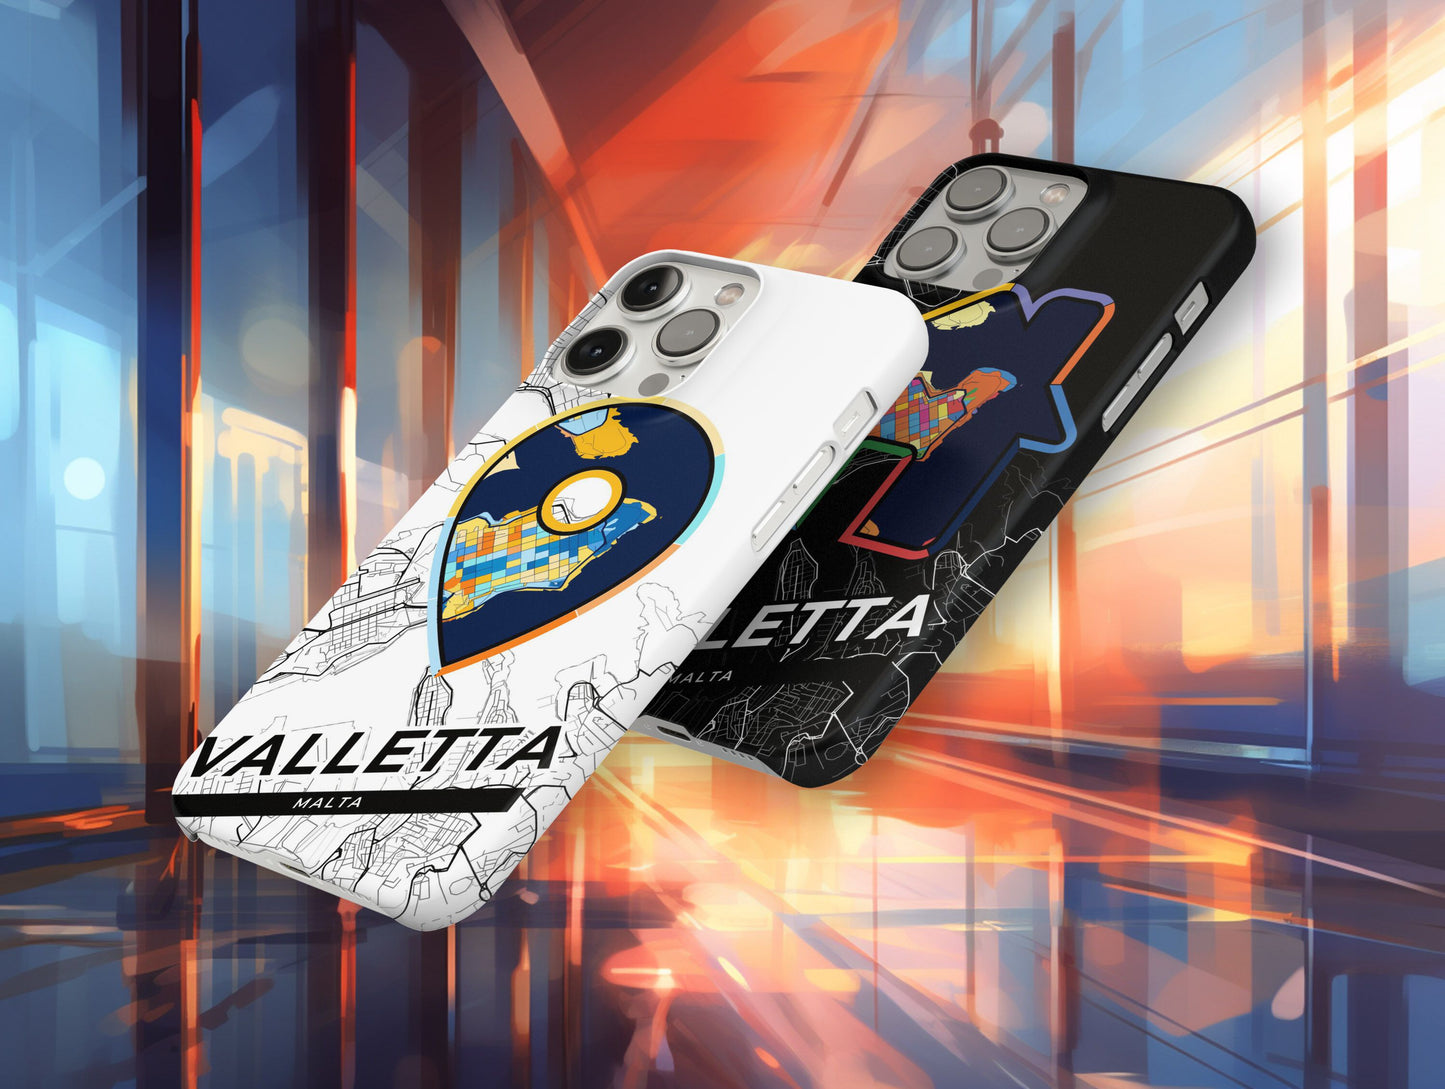 Valletta Malta slim phone case with colorful icon